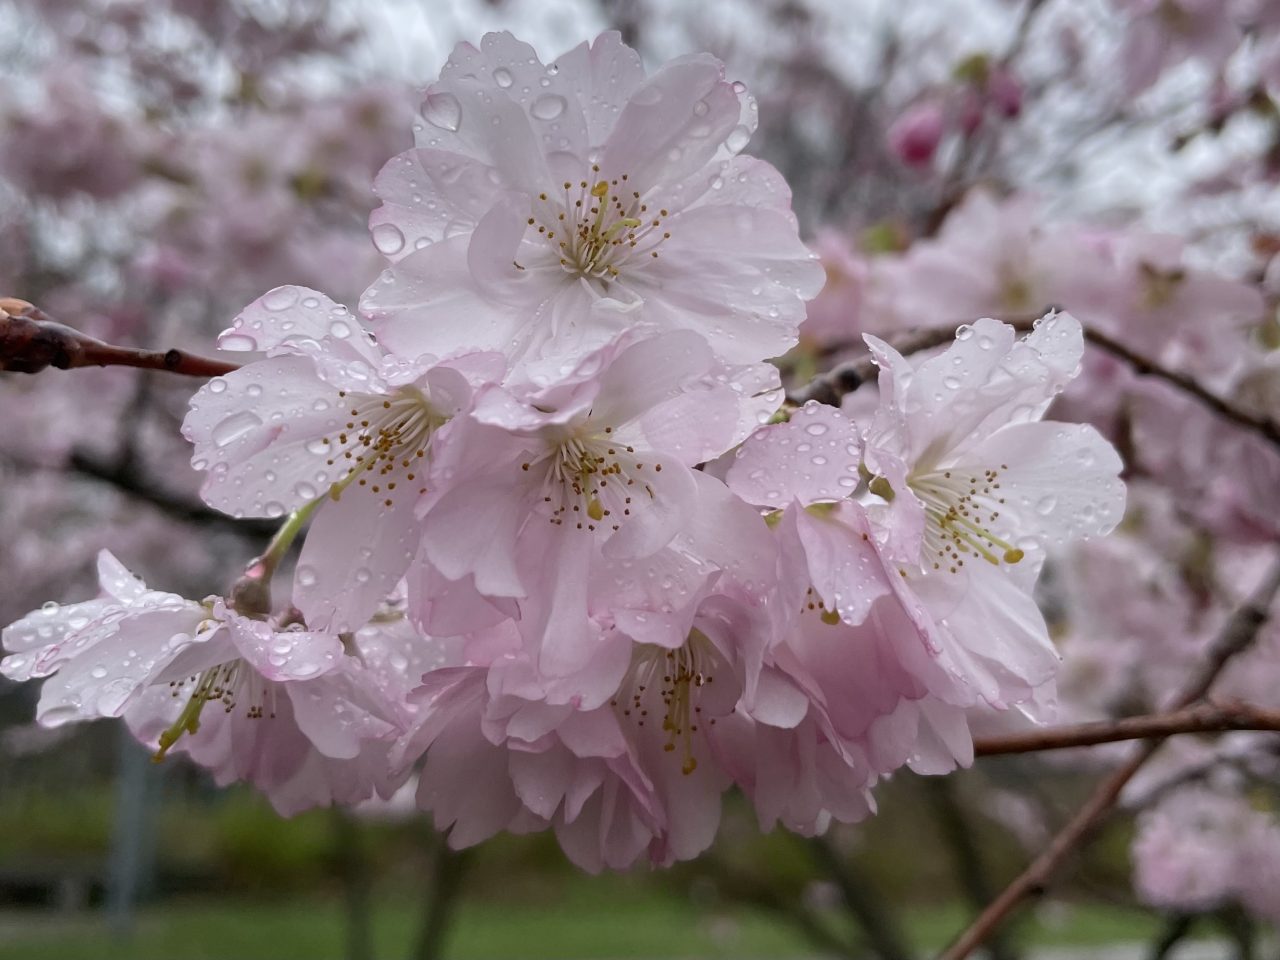 Rosa Kirschblüten an einem Ast mit Regentropfen versehen